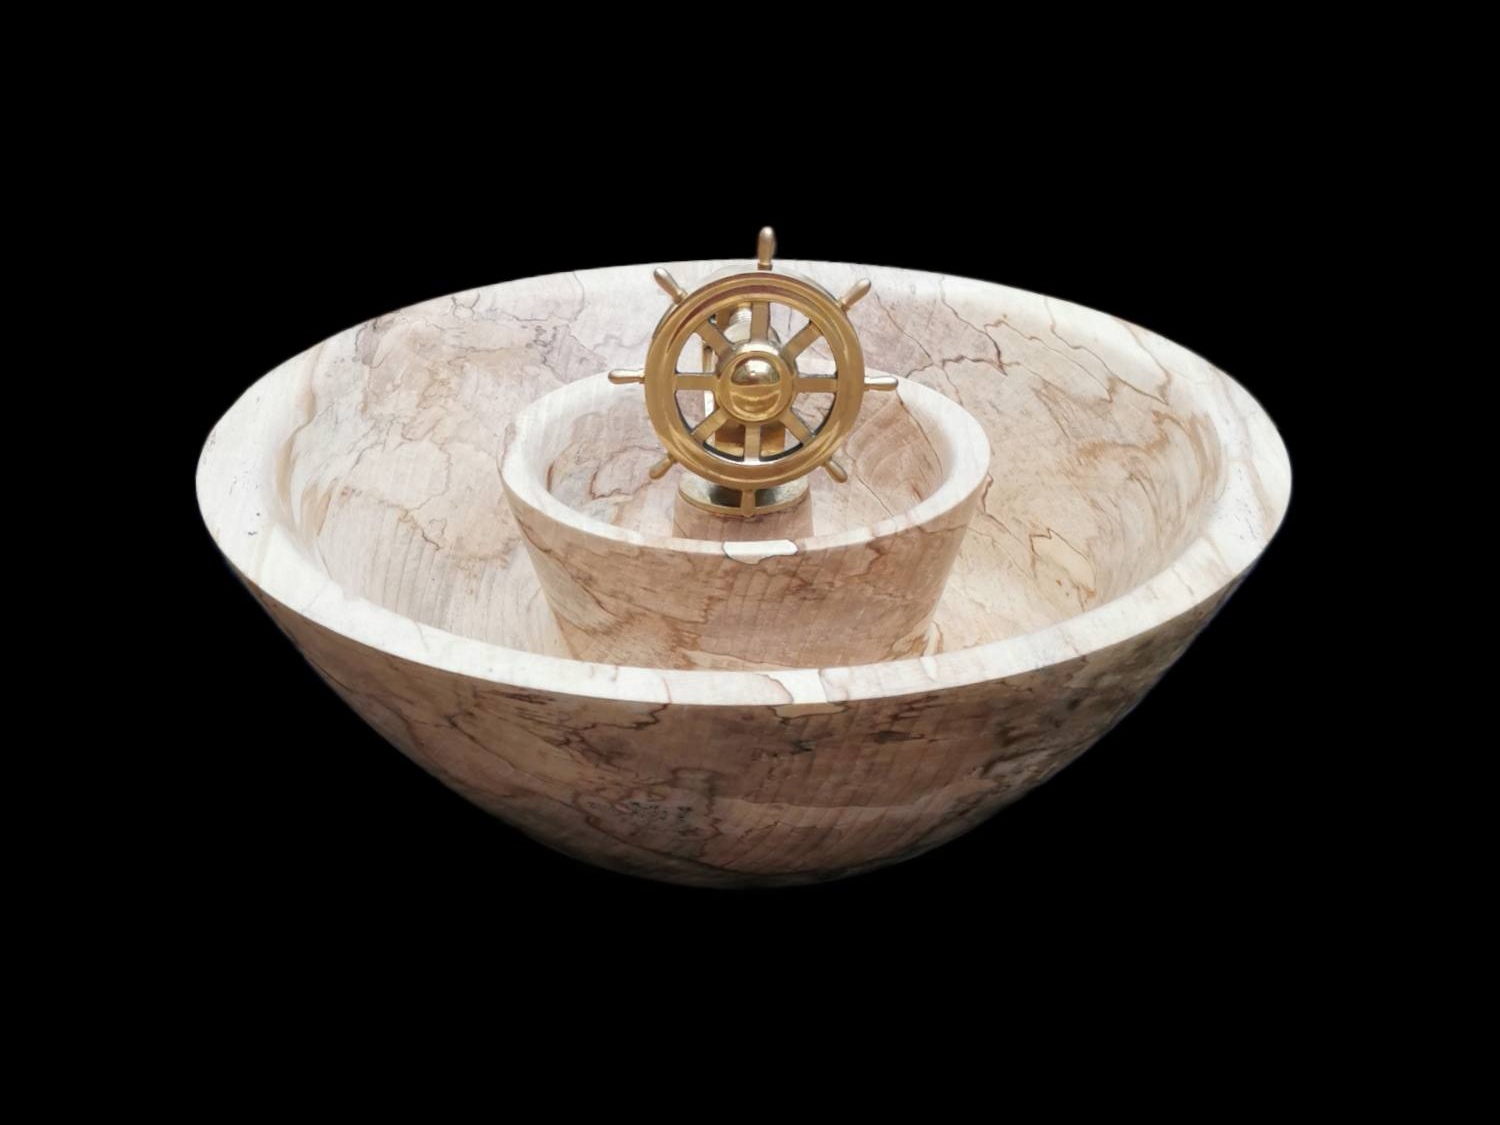 Wood Turned Nutcracker Bowl with Brass Ships Wheel Nutcracker